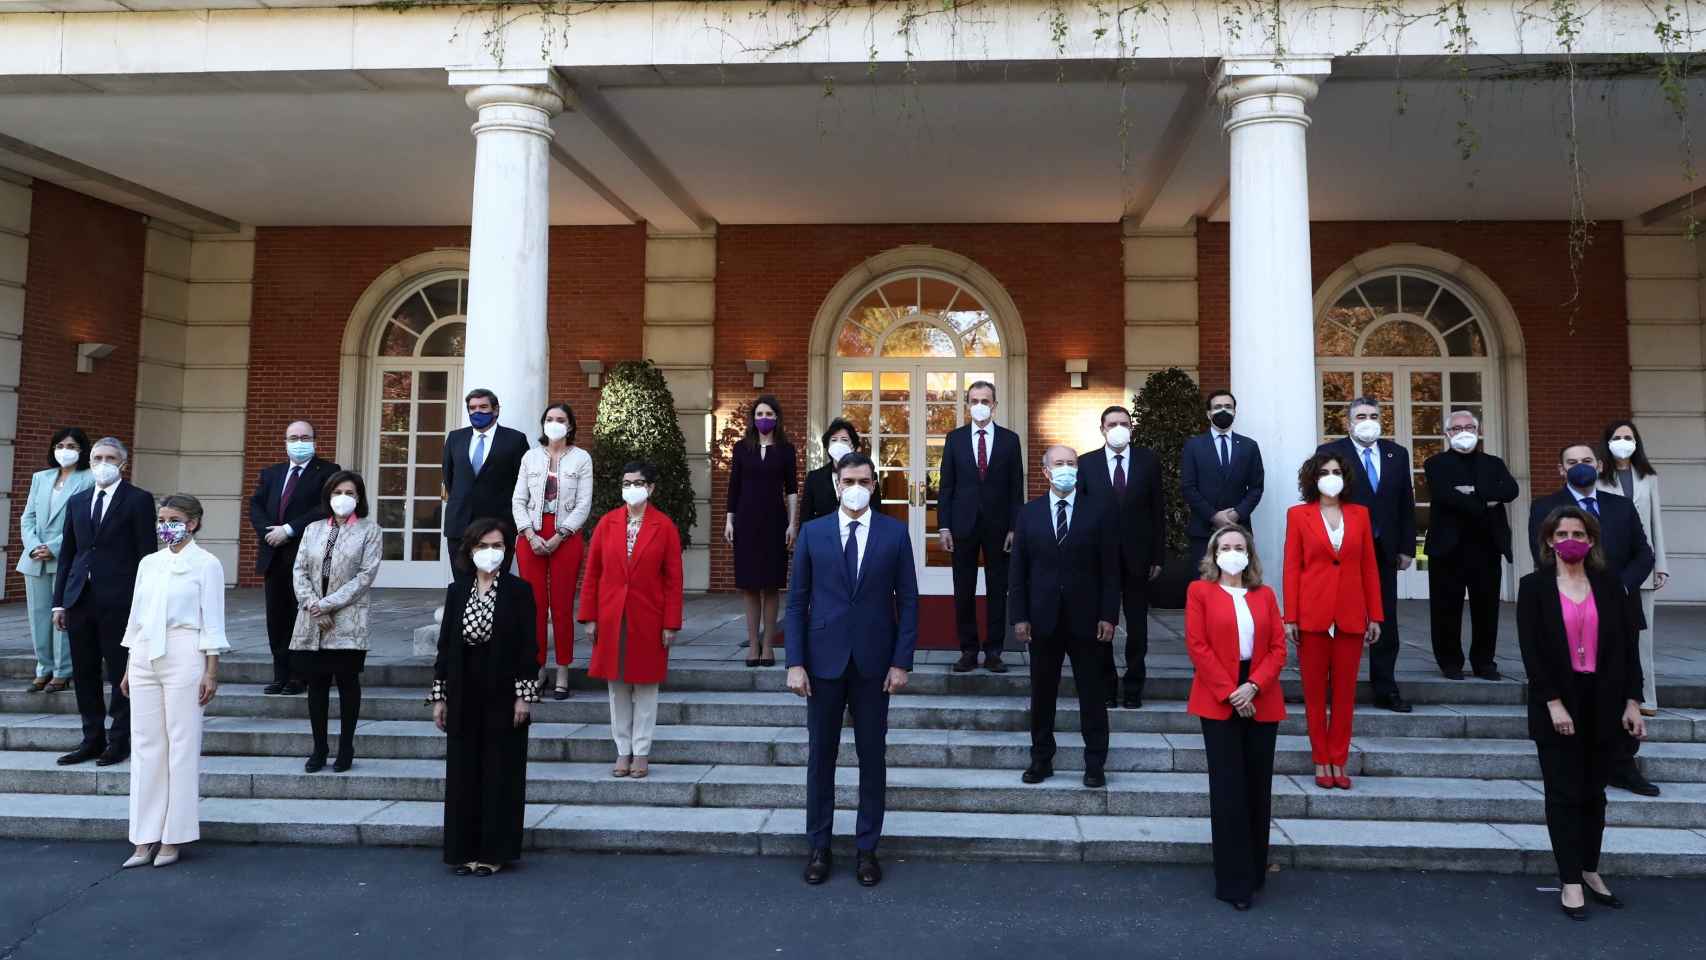 Foto del Gobierno de Pedro Sánchez, actualizada tras la entrada de Ione Belarra y los ascensos de Yolanda Díaz y Nadia Calviño.